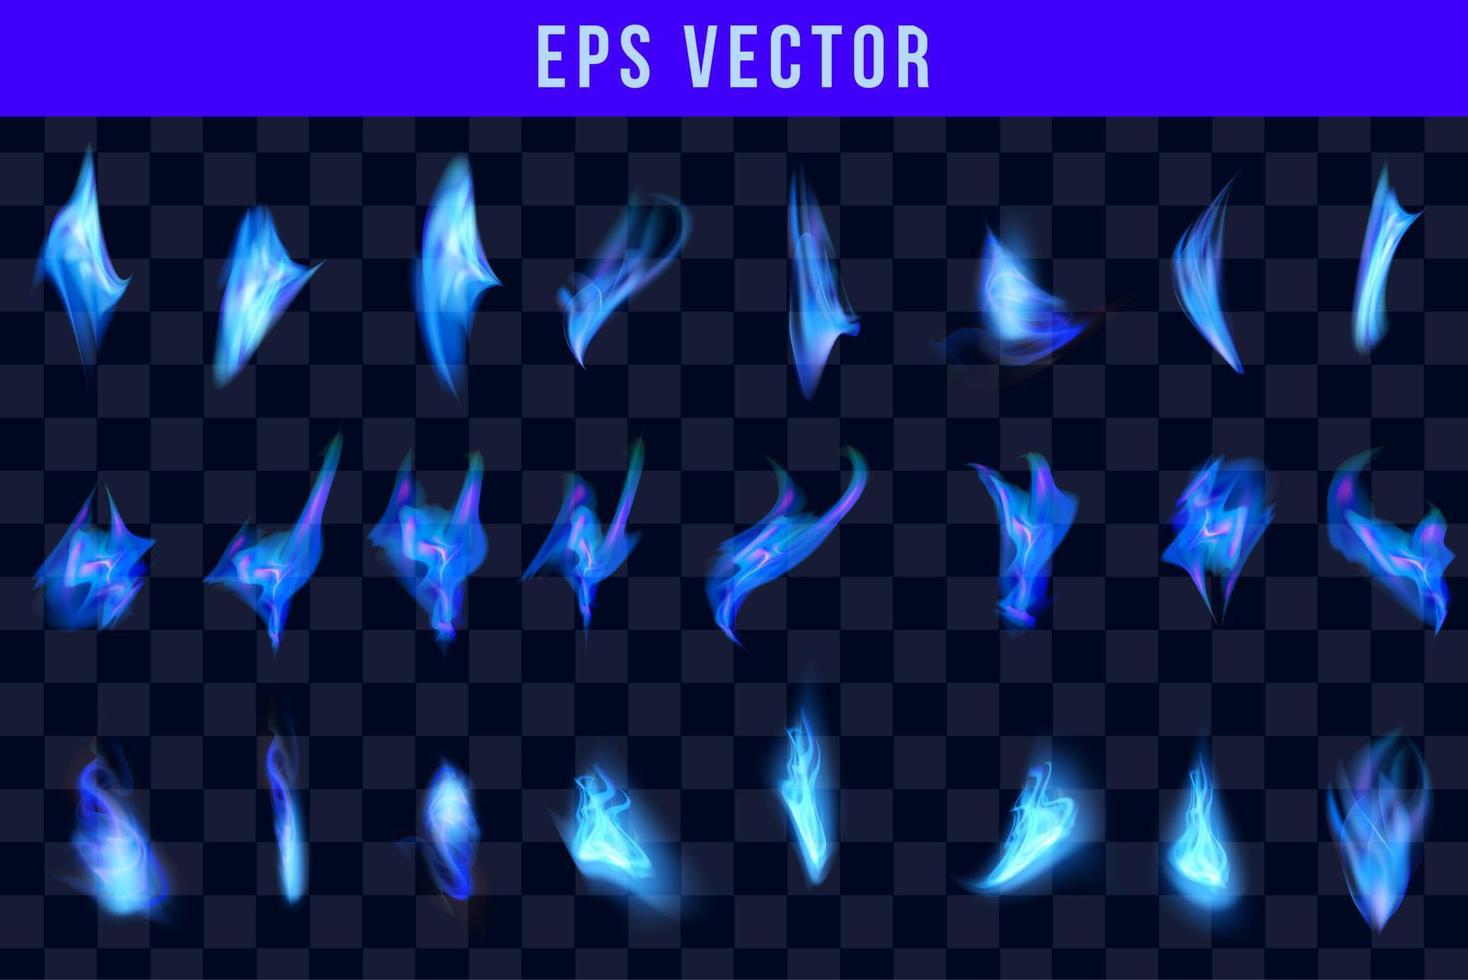 llamas de fuego azul conjunto realista de diferentes formas y tamaños sobre fondo negro ilustración vectorial aislada vector